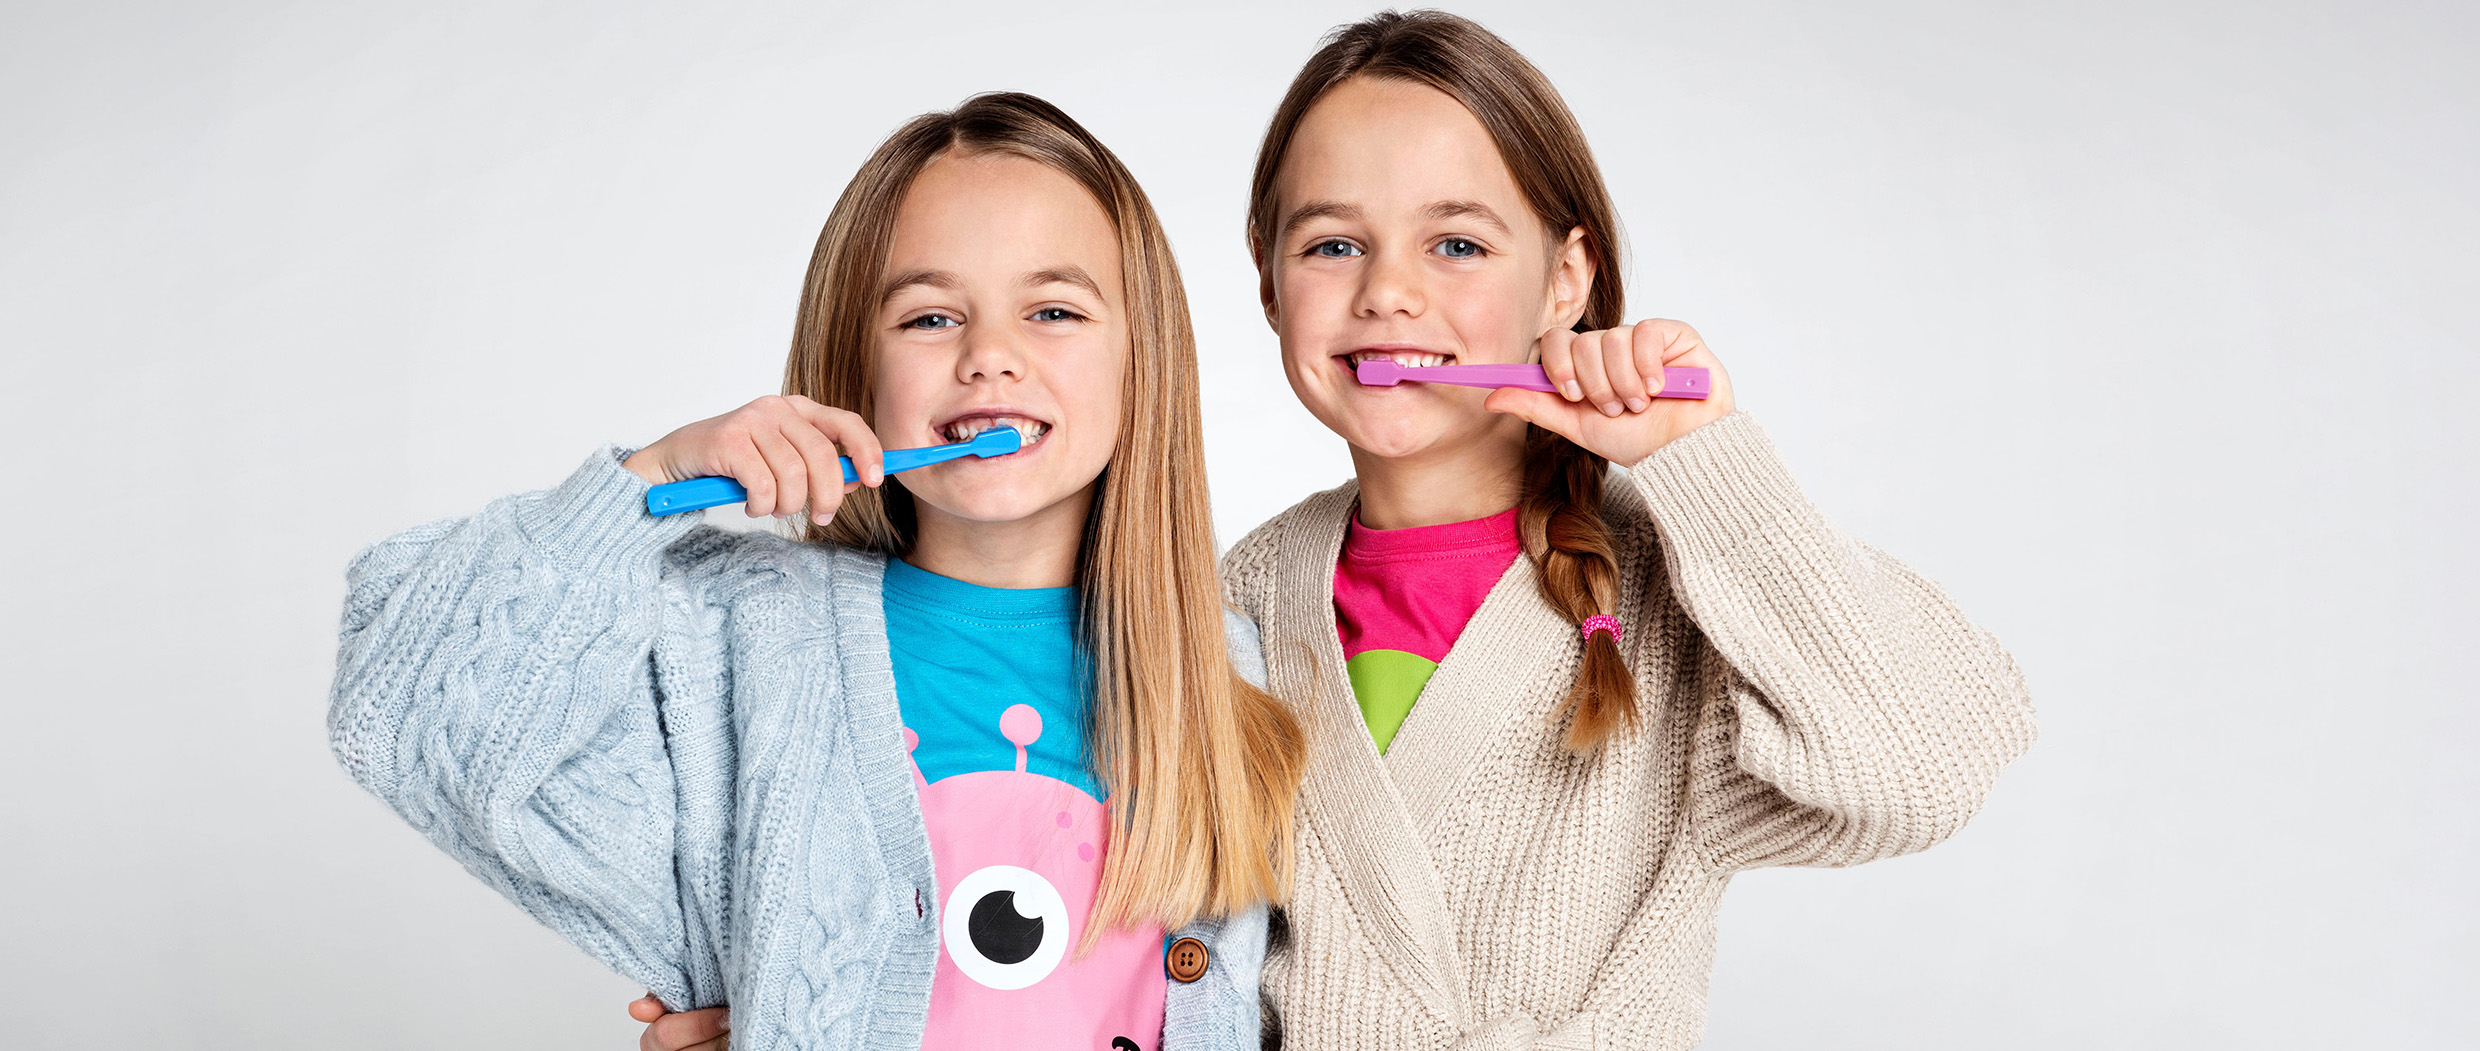 Dentalhygiene und Zahnarzt online buchen